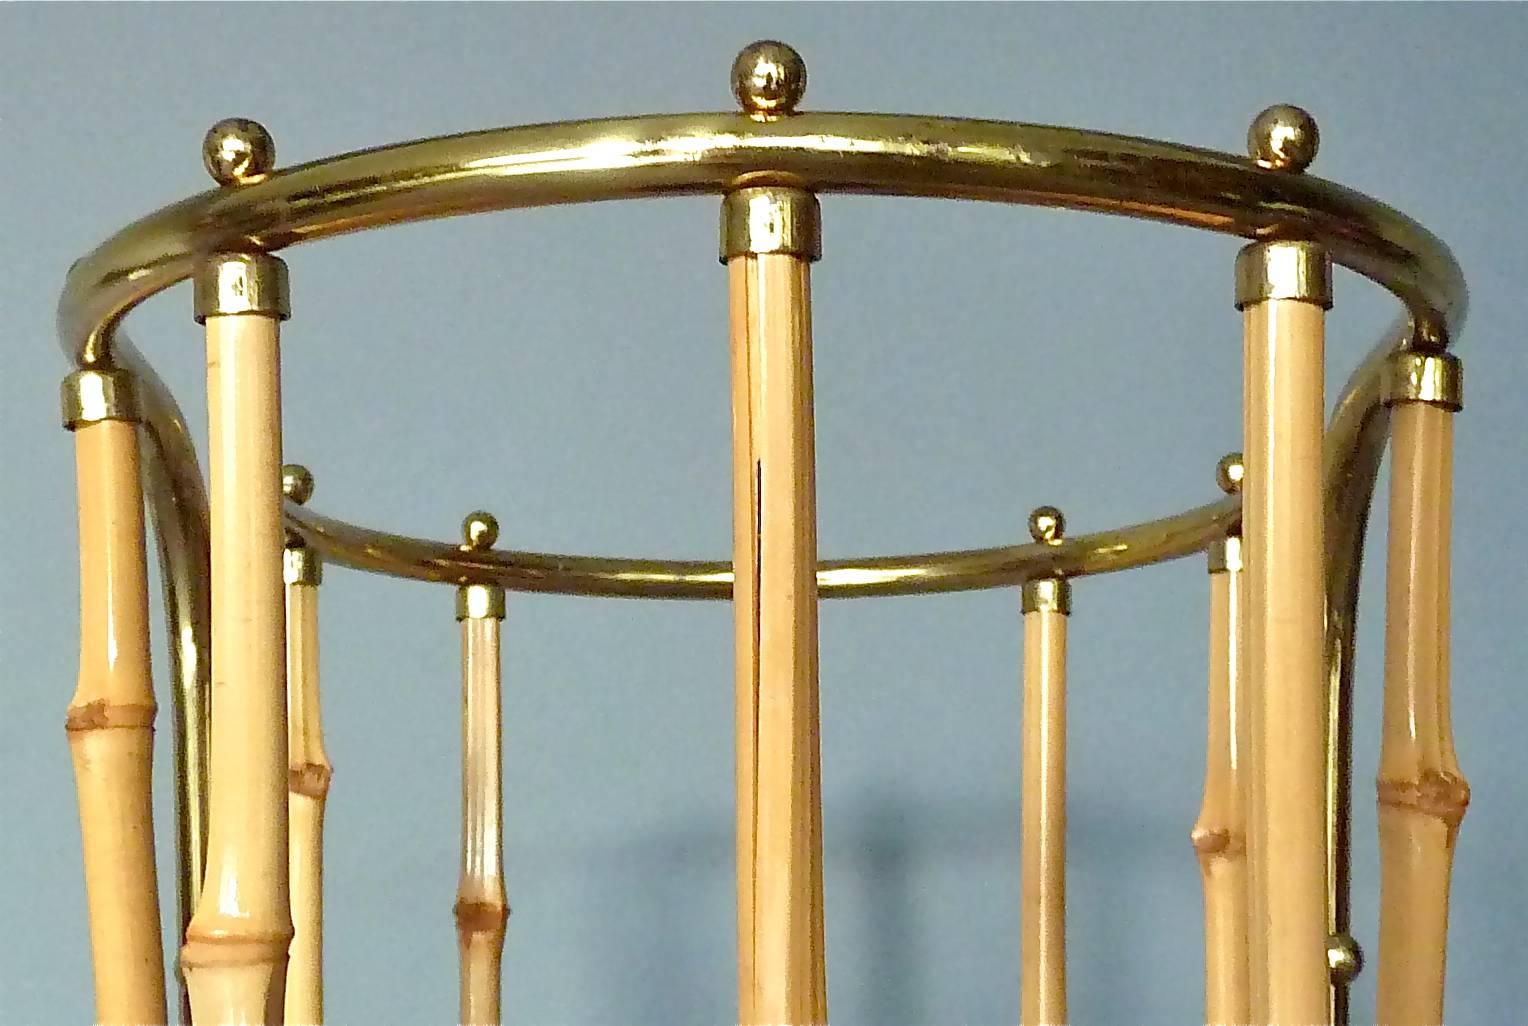 1950s Austrian Modernist Umbrella Stand Brass Bamboo, Josef Frank, Auböck Style 3